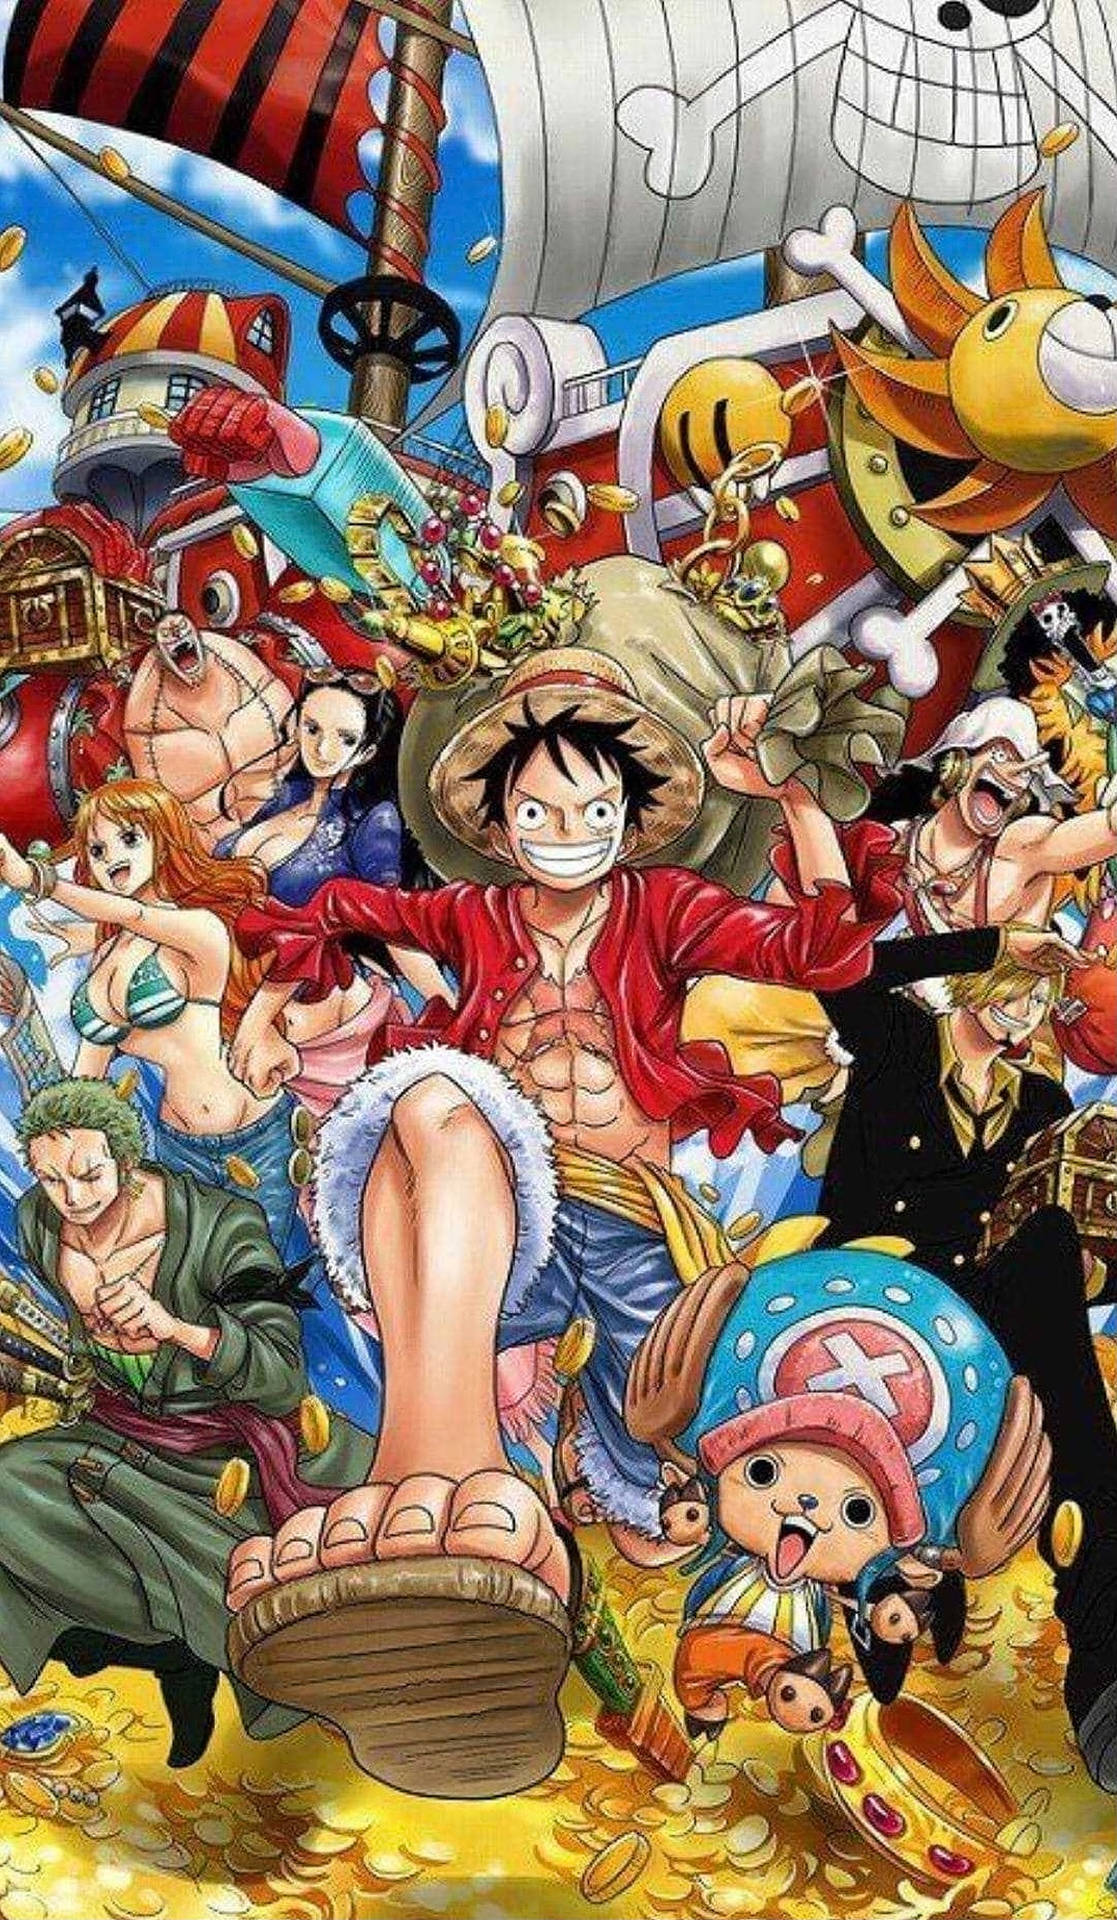 Anime One Piece 4k Ultra HD Wallpaper by nourssj3